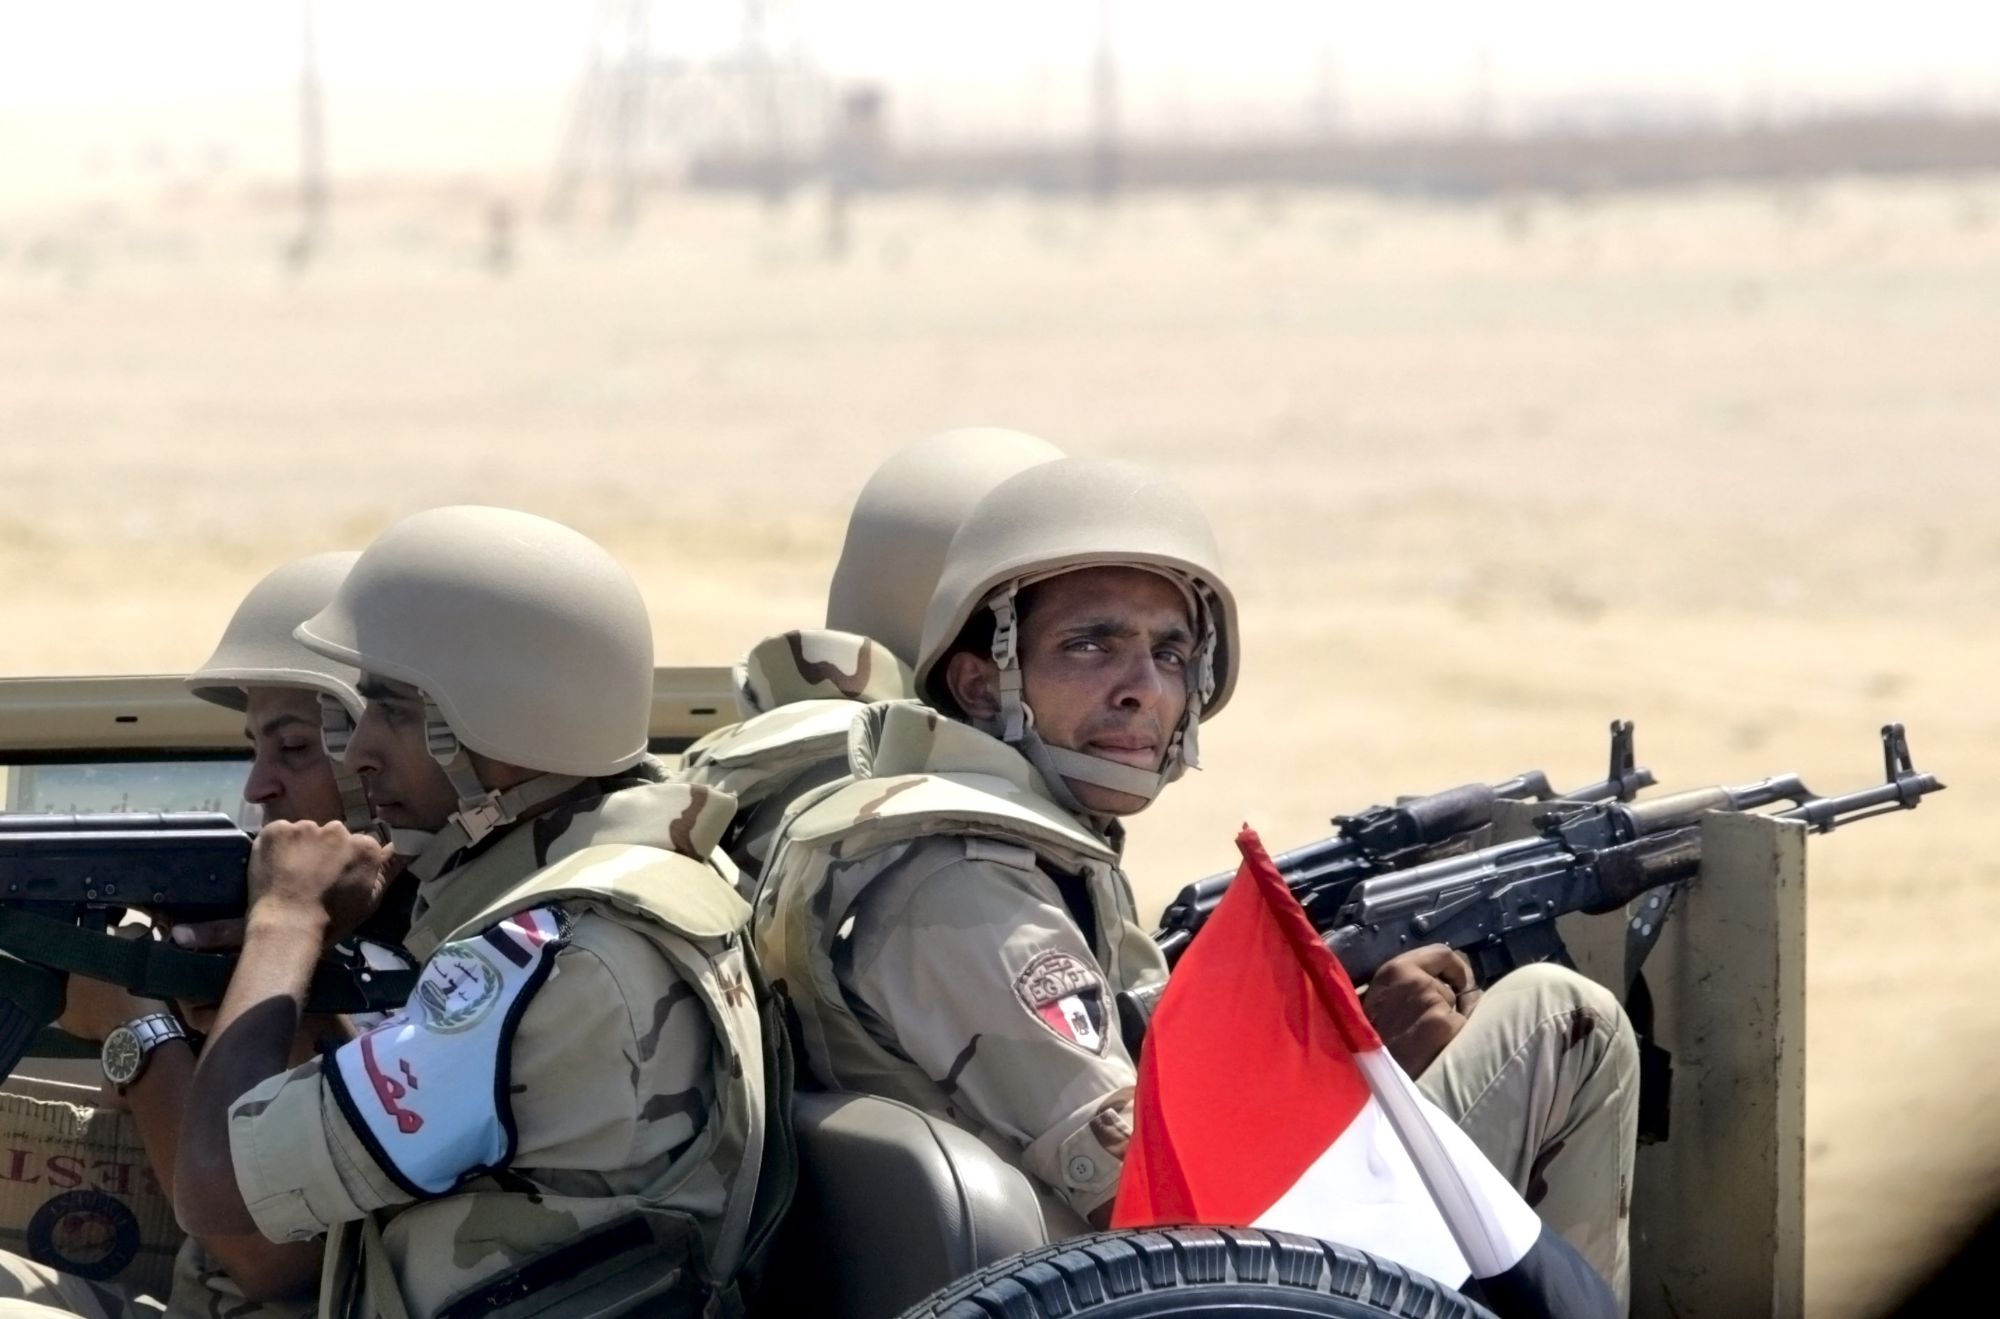 الجيش المصري أحبط تهريب شحنات أسلحة من ليبيا الى سيناء حيث تتمركز جماعات متطرفة